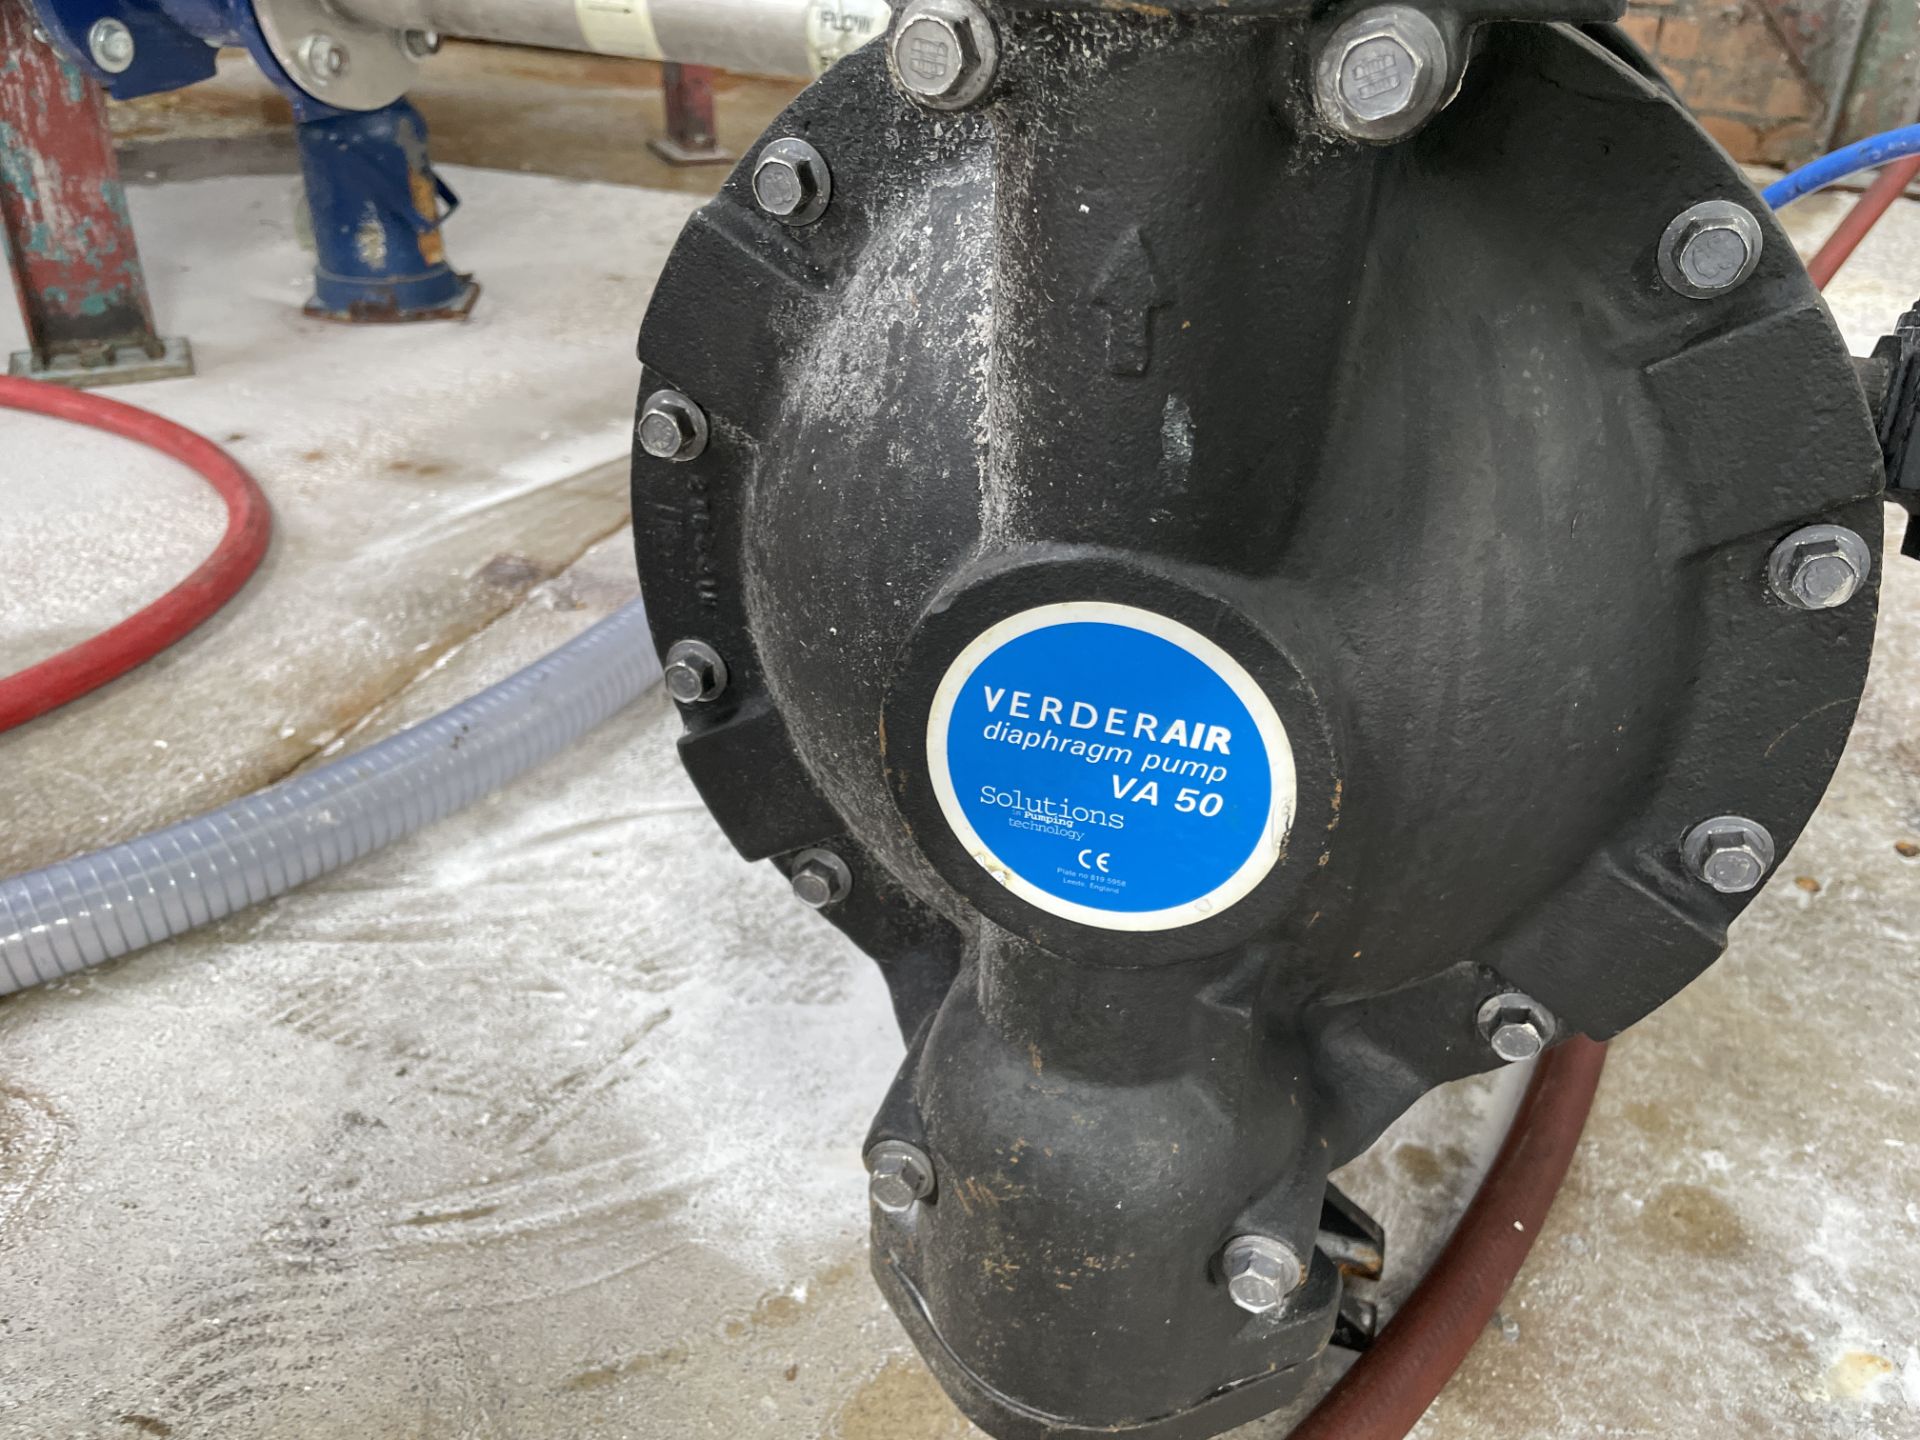 Verderair VA50 Diaphragm Pump (Contractors take out charge - £20) Please read the following - Bild 2 aus 3